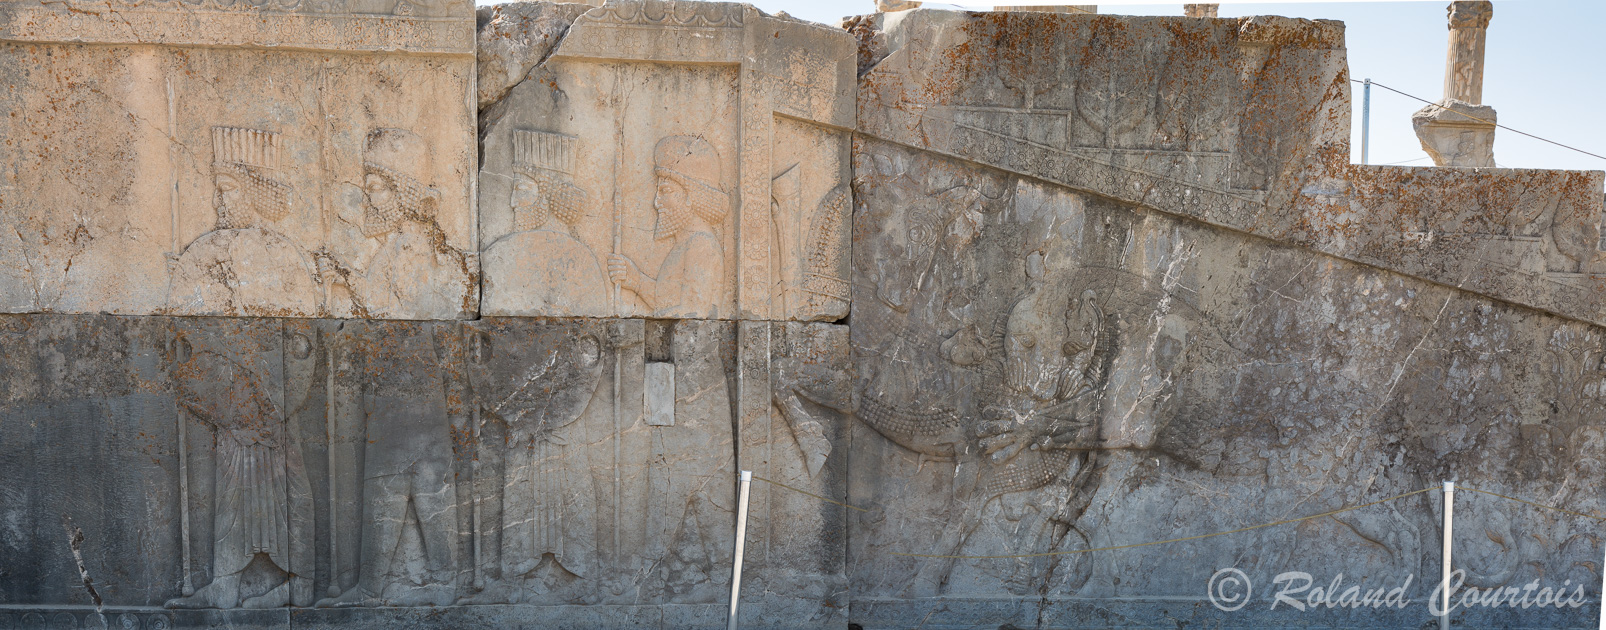 Persepolis : Deux escaliers monumentaux permettent d’accéder à l’Apadana. L’escalier oriental, très bien conservé, illustre l’une des cérémonies qui se déroulaient lors des fêtes de Nouvel An : grande procession des diverses nations vassales devant le souverain et la présentation de leurs tributs.